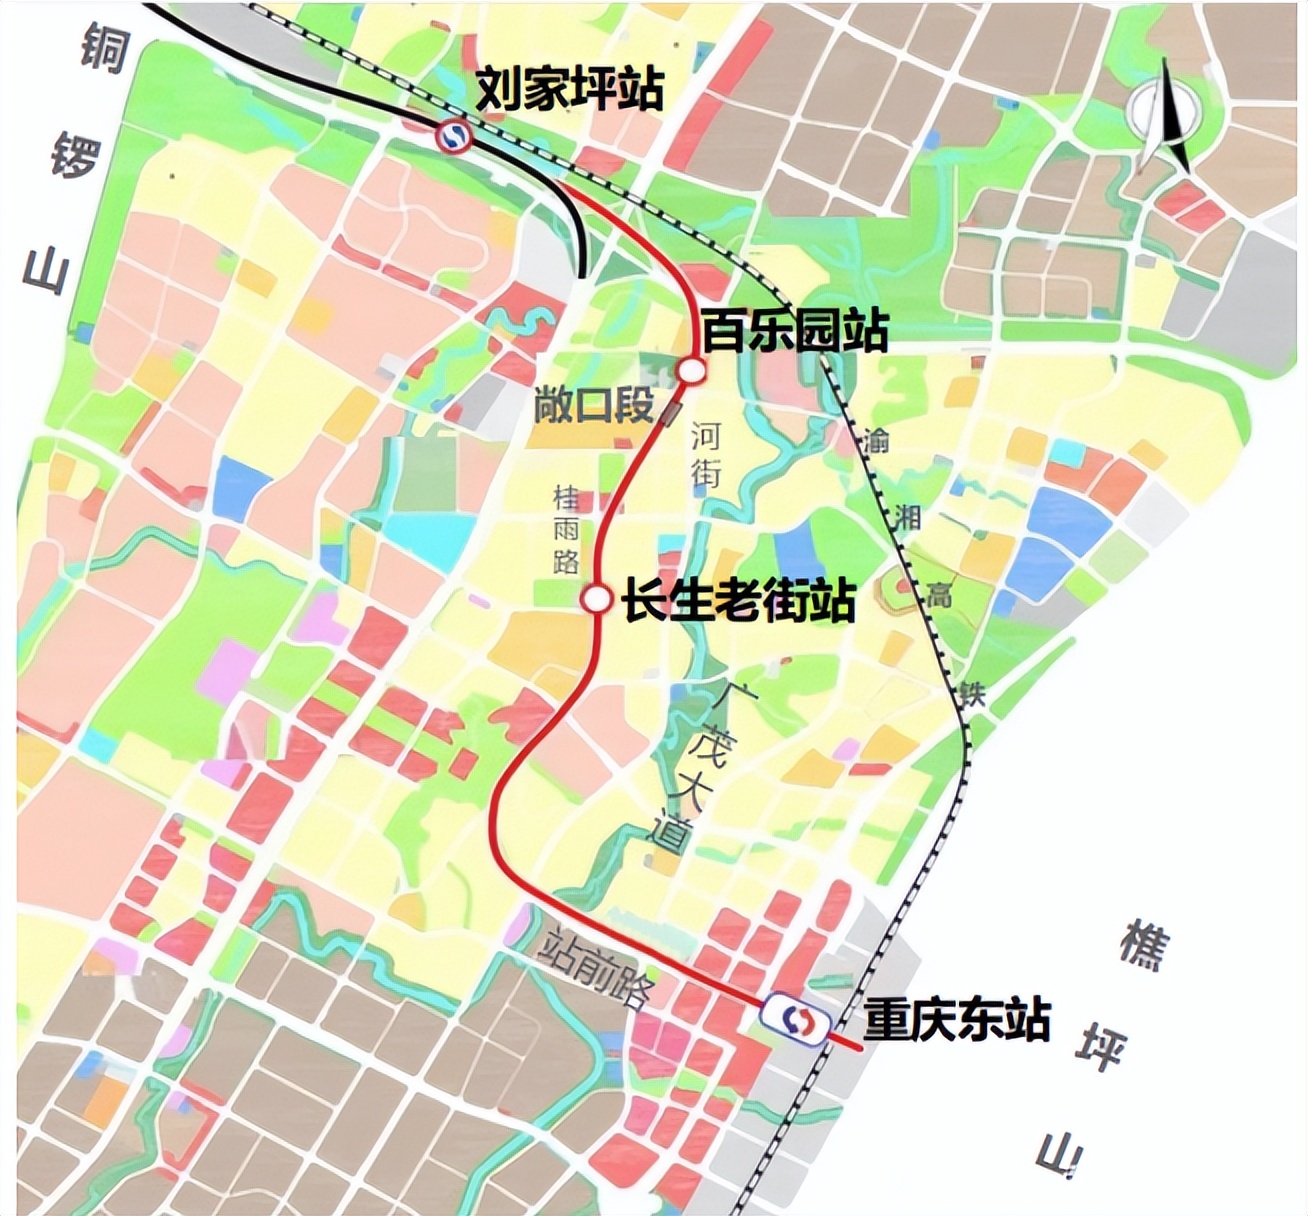 重庆茶园轨道交通规划图片